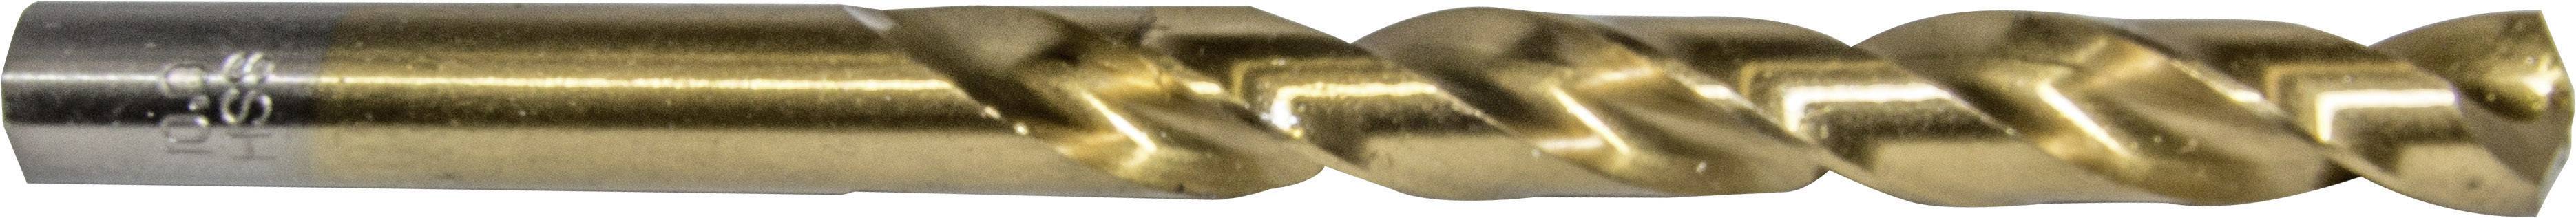 HELLER 29265 8 Metall-Spiralbohrer 1 Stück 5.5 mm Gesamtlänge 93 mm 1 St.